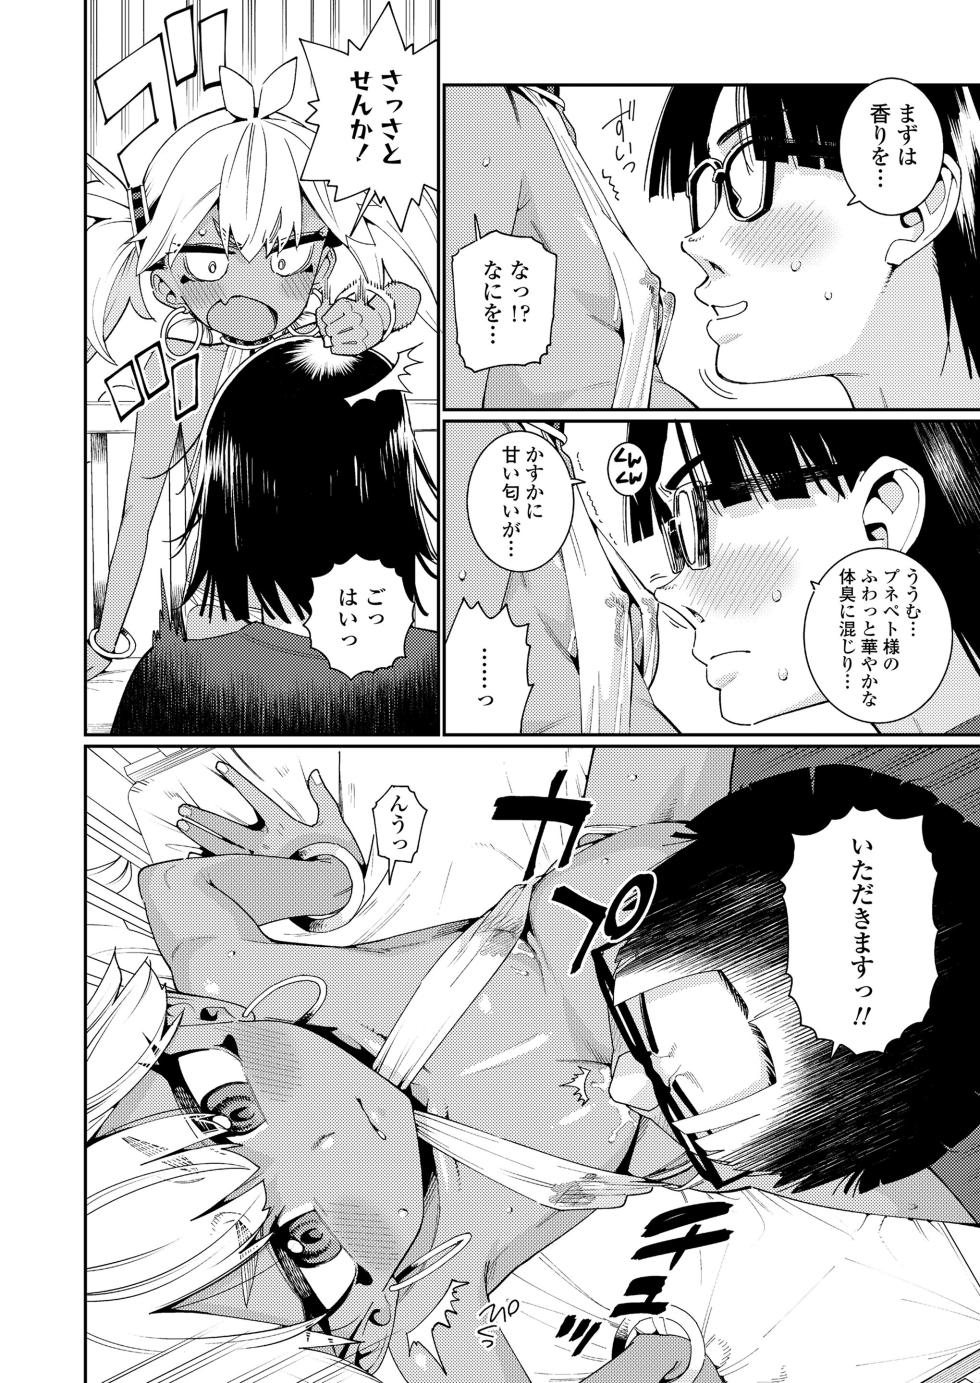 Towako 16 [Digital] - Page 8